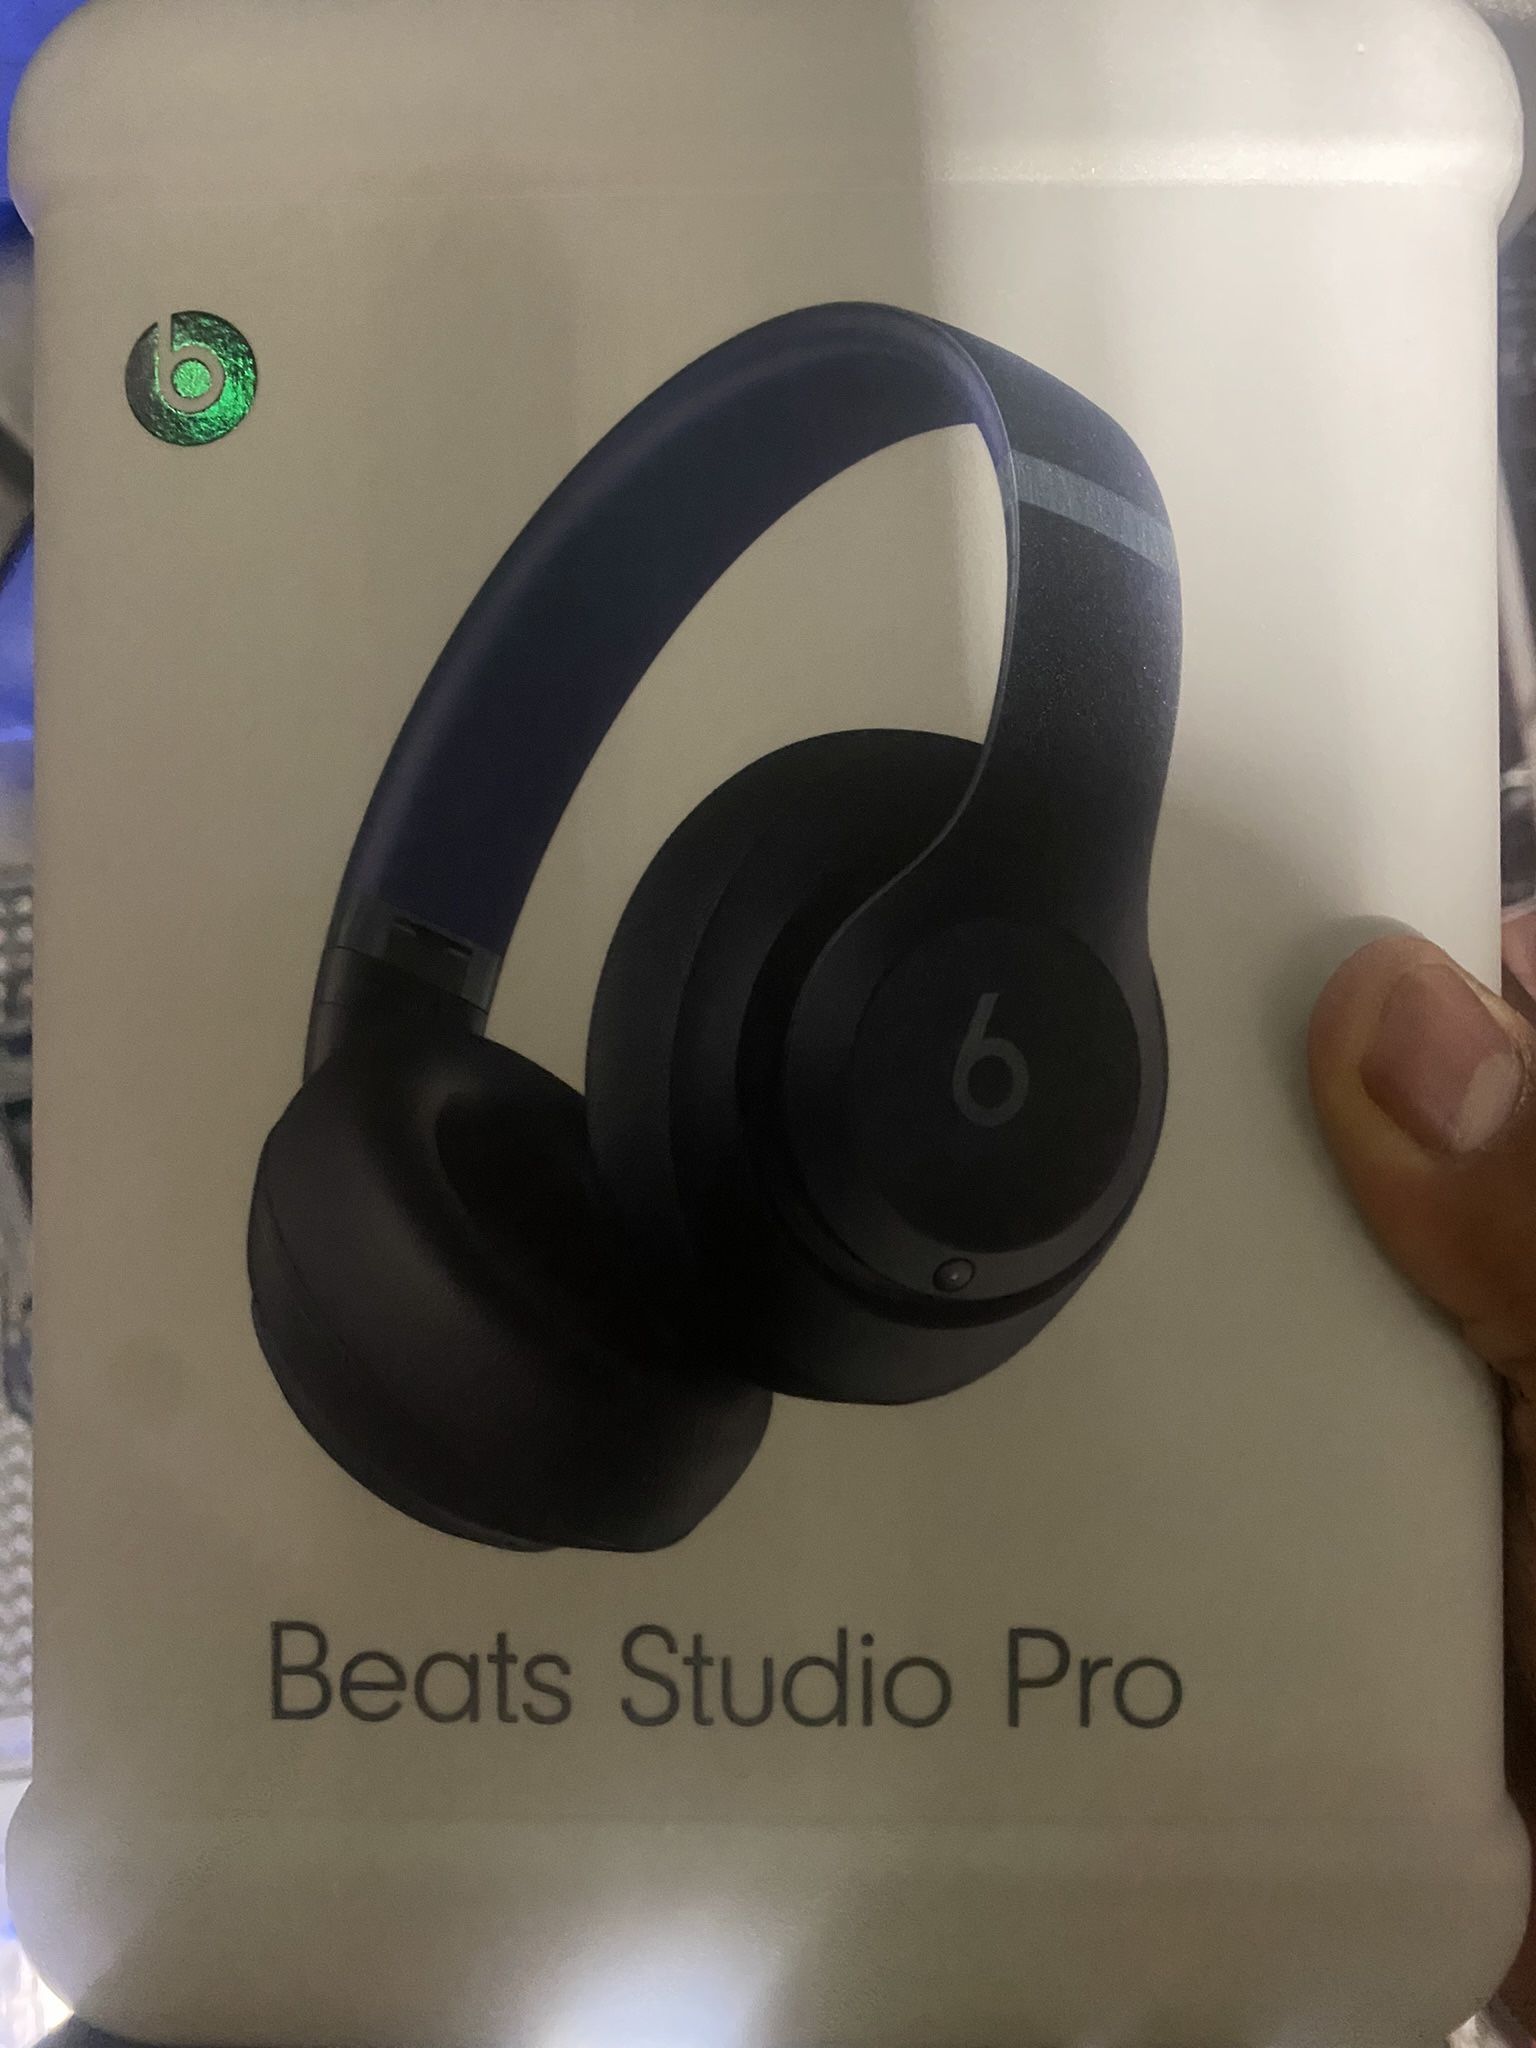 Beats studio pros